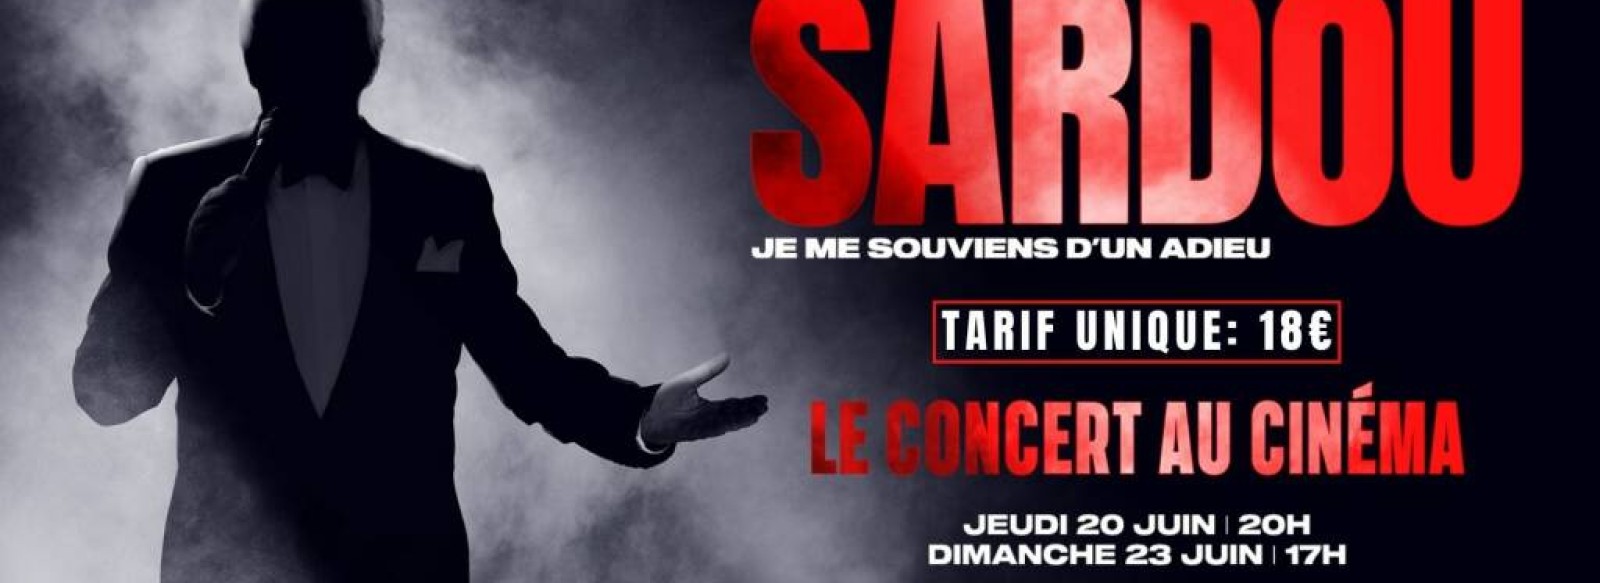 Michel Sardou - le concert au cinema